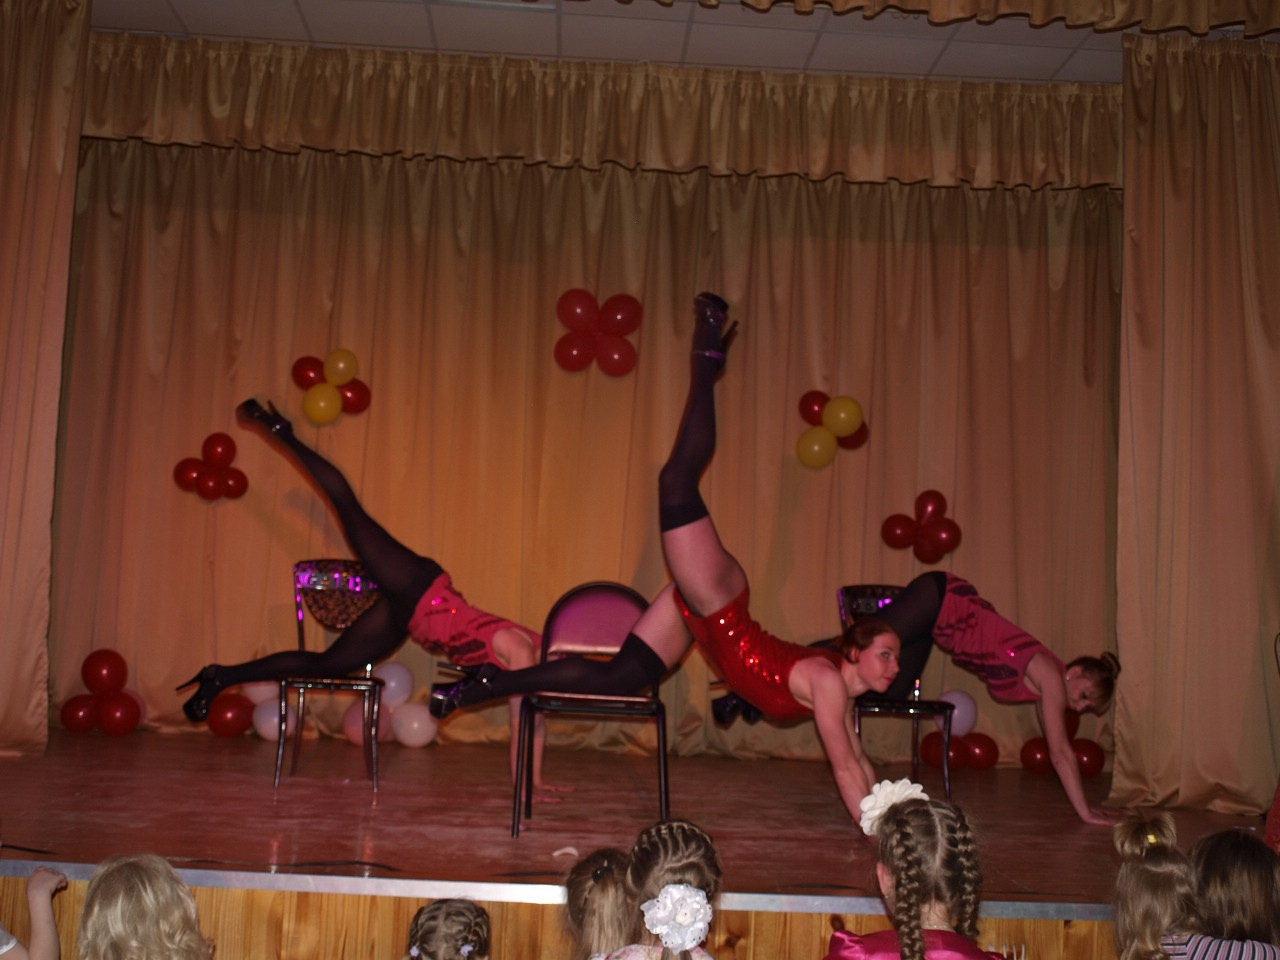 В Смоленске детям показали зажигательные танцы для категории 18+